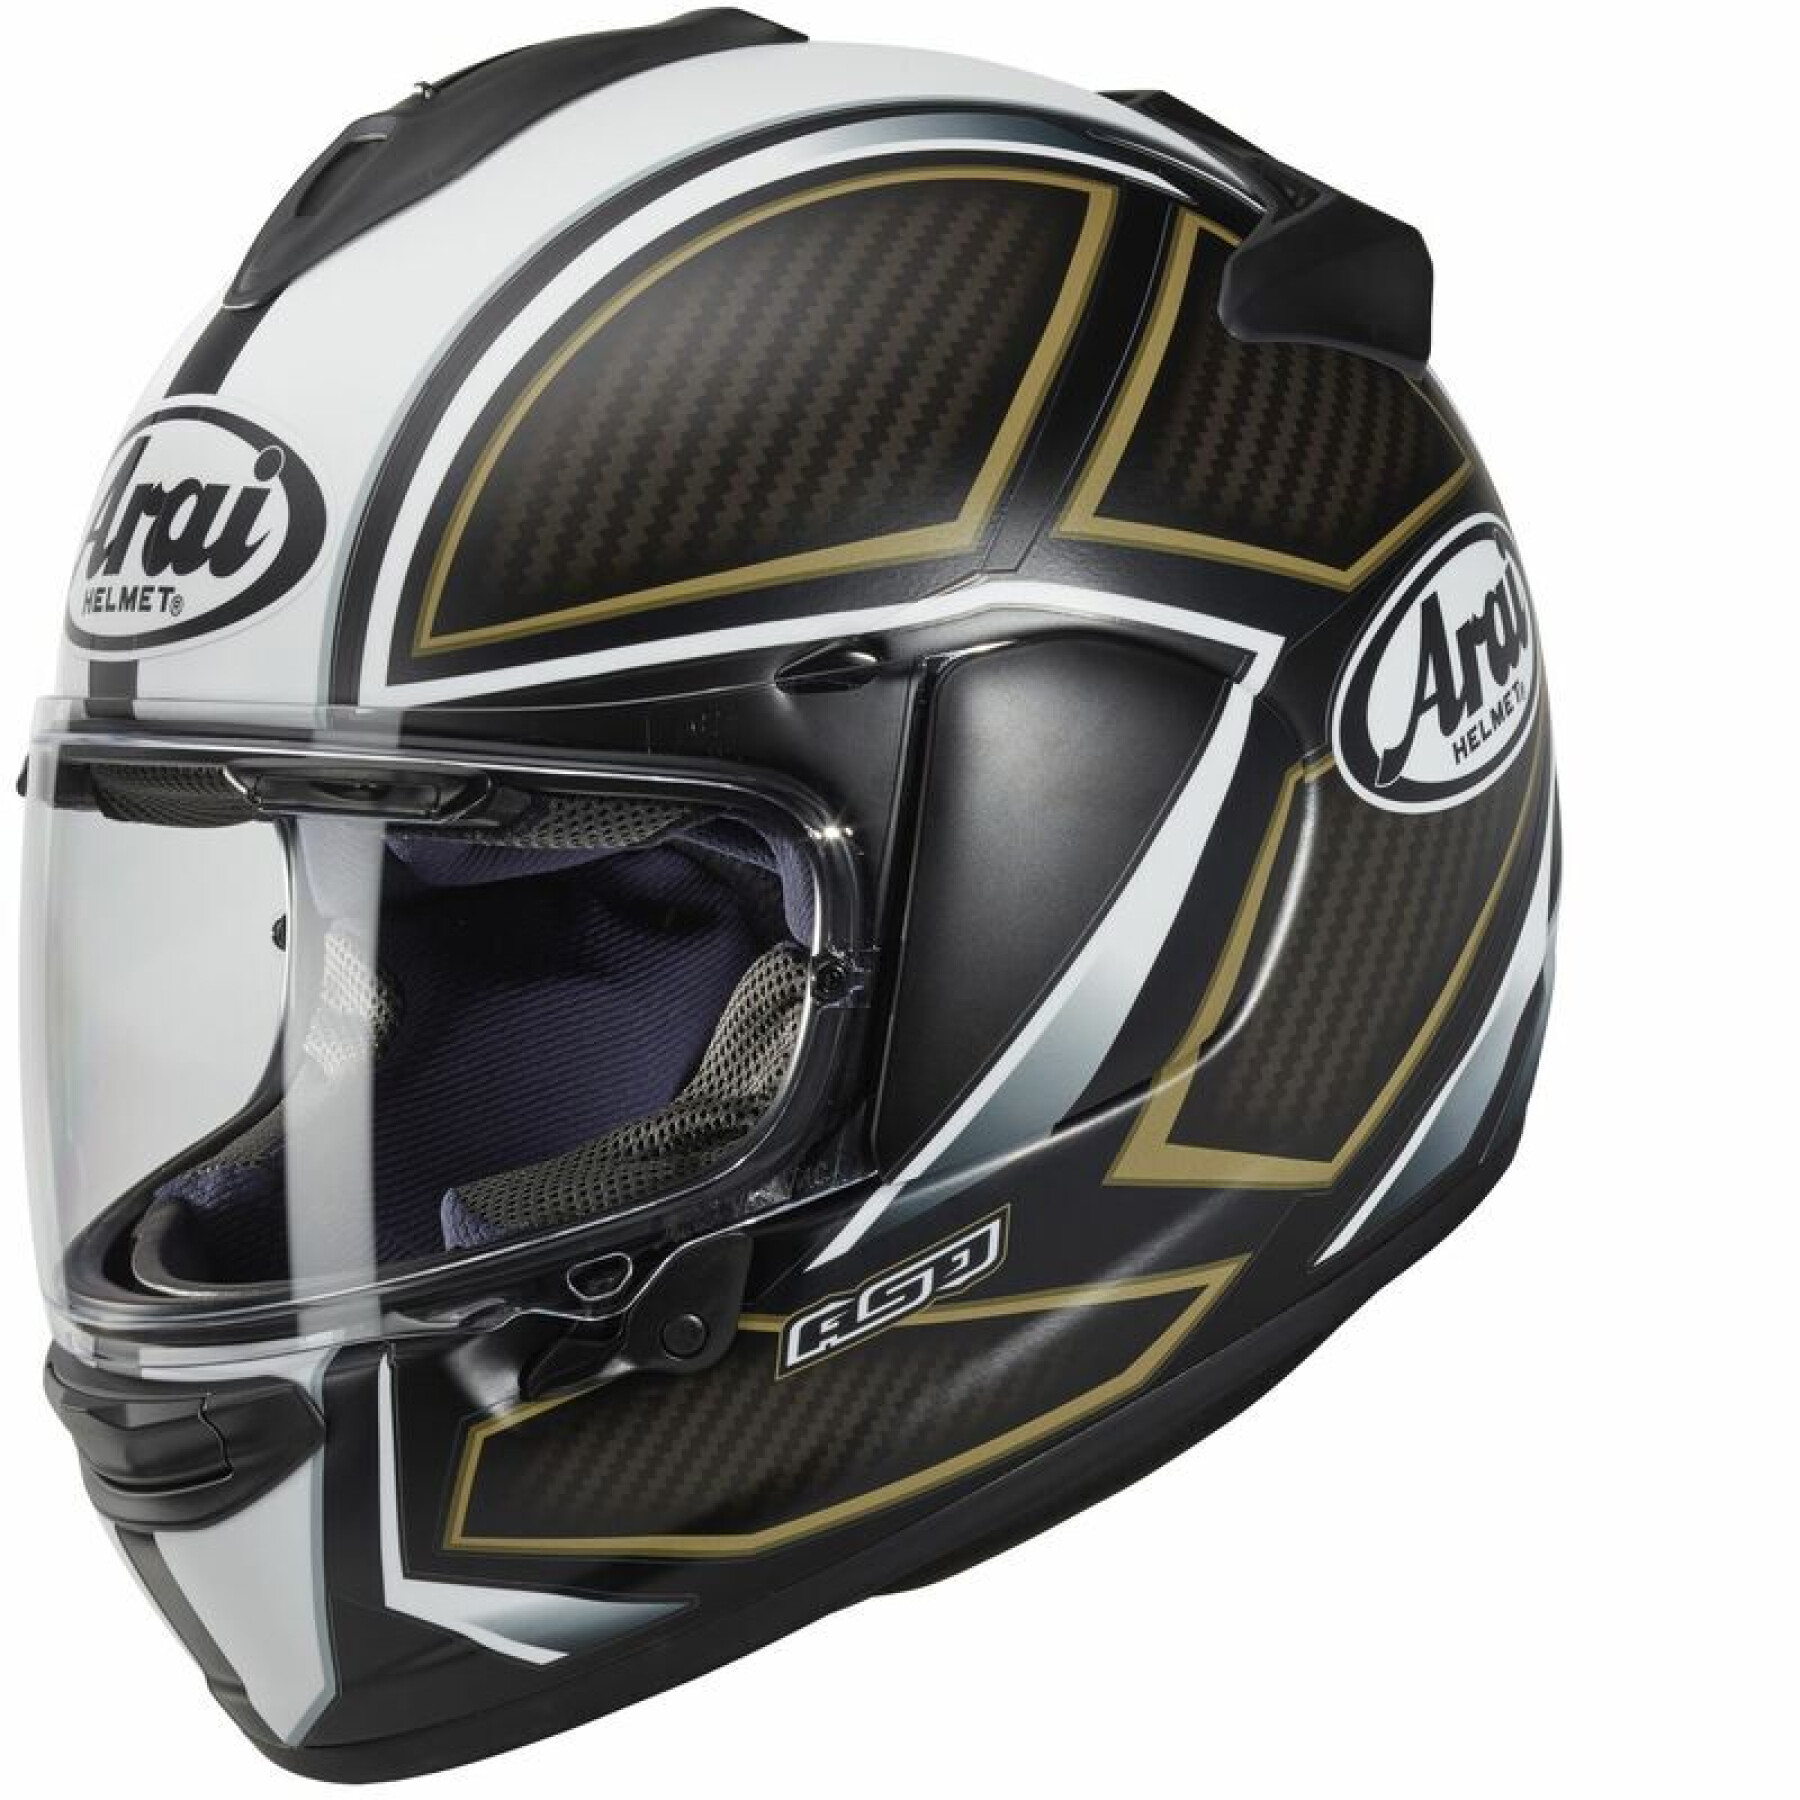 Full face motorcycle helmet Arai Chaser-X